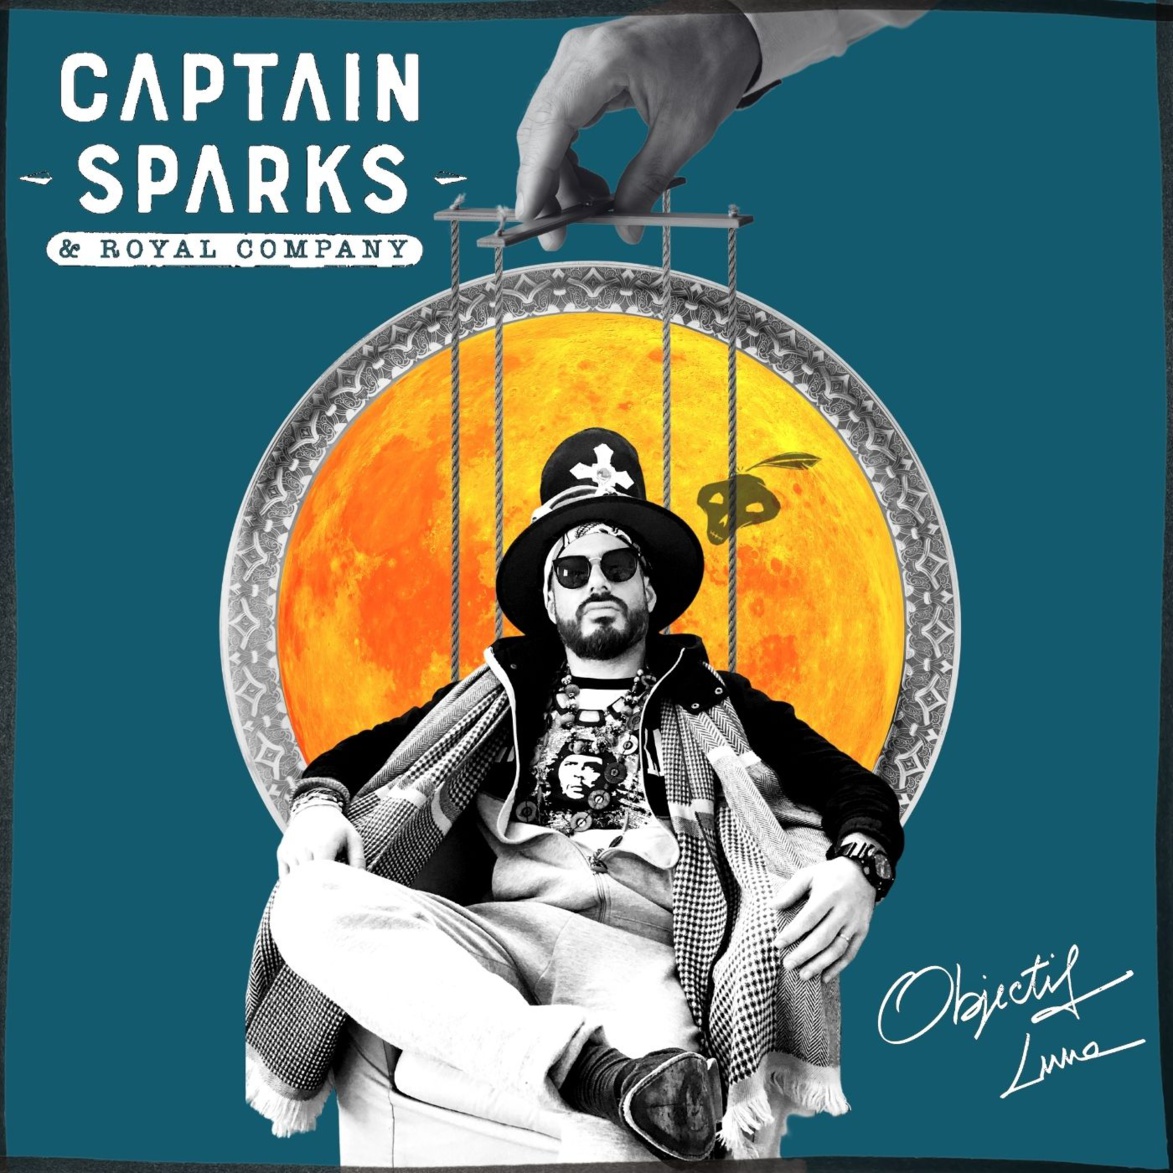 Captain Sparks & Royal Company font décoller les chansons avec Objectif Lune